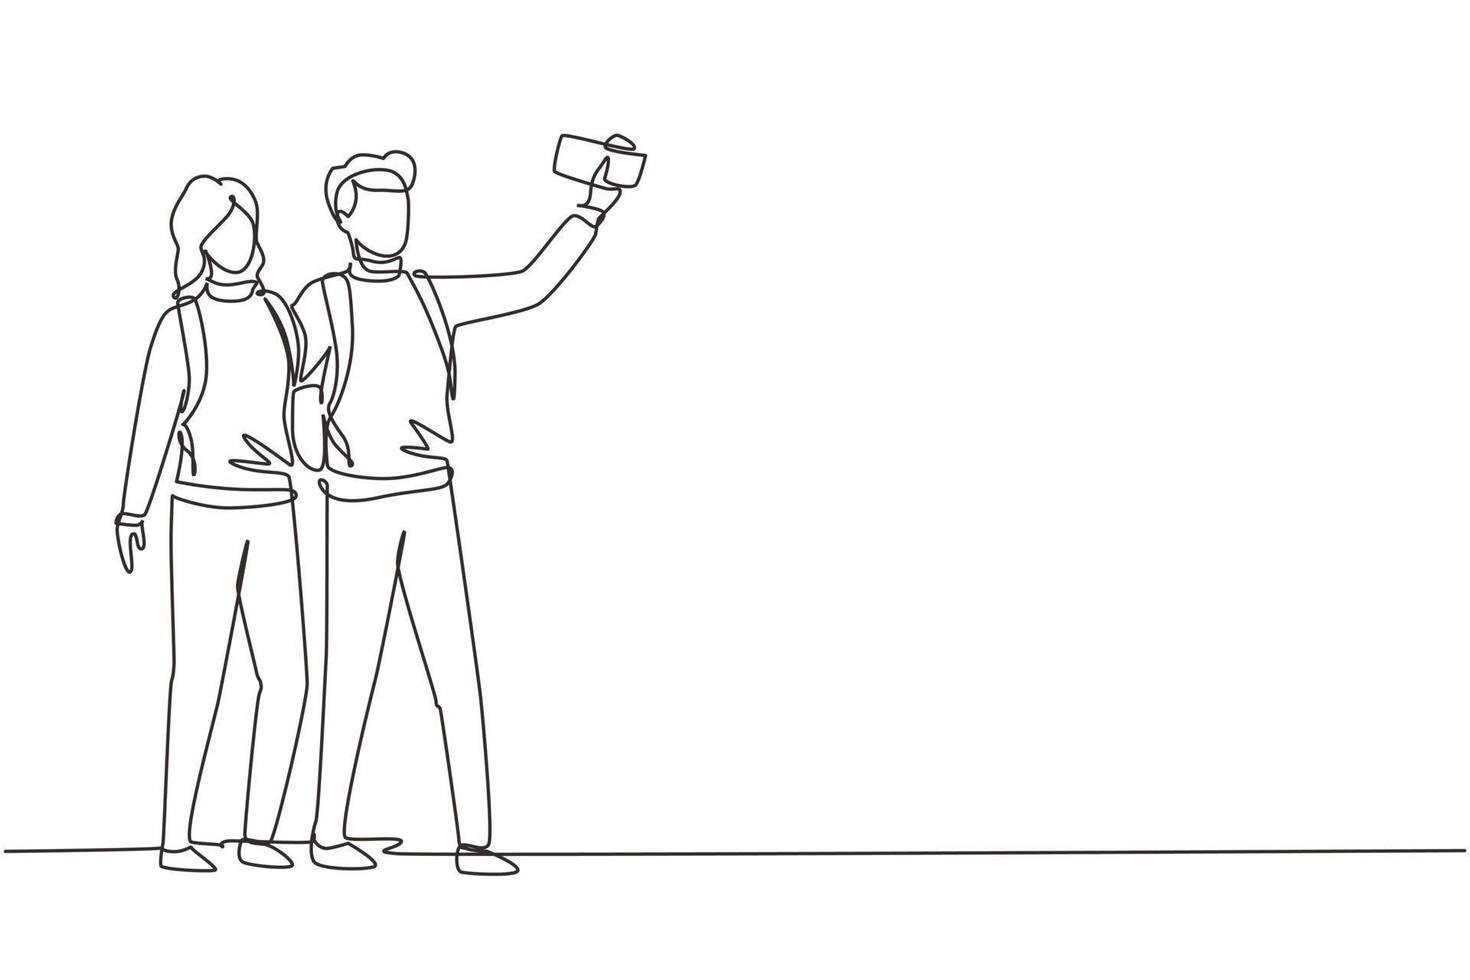 enda kontinuerlig linjeritning par stående full längd försöker ta selfie med mobil enhet i handen. man och kvinna fotograferas tillsammans. en rad rita grafisk design vektorillustration vektor